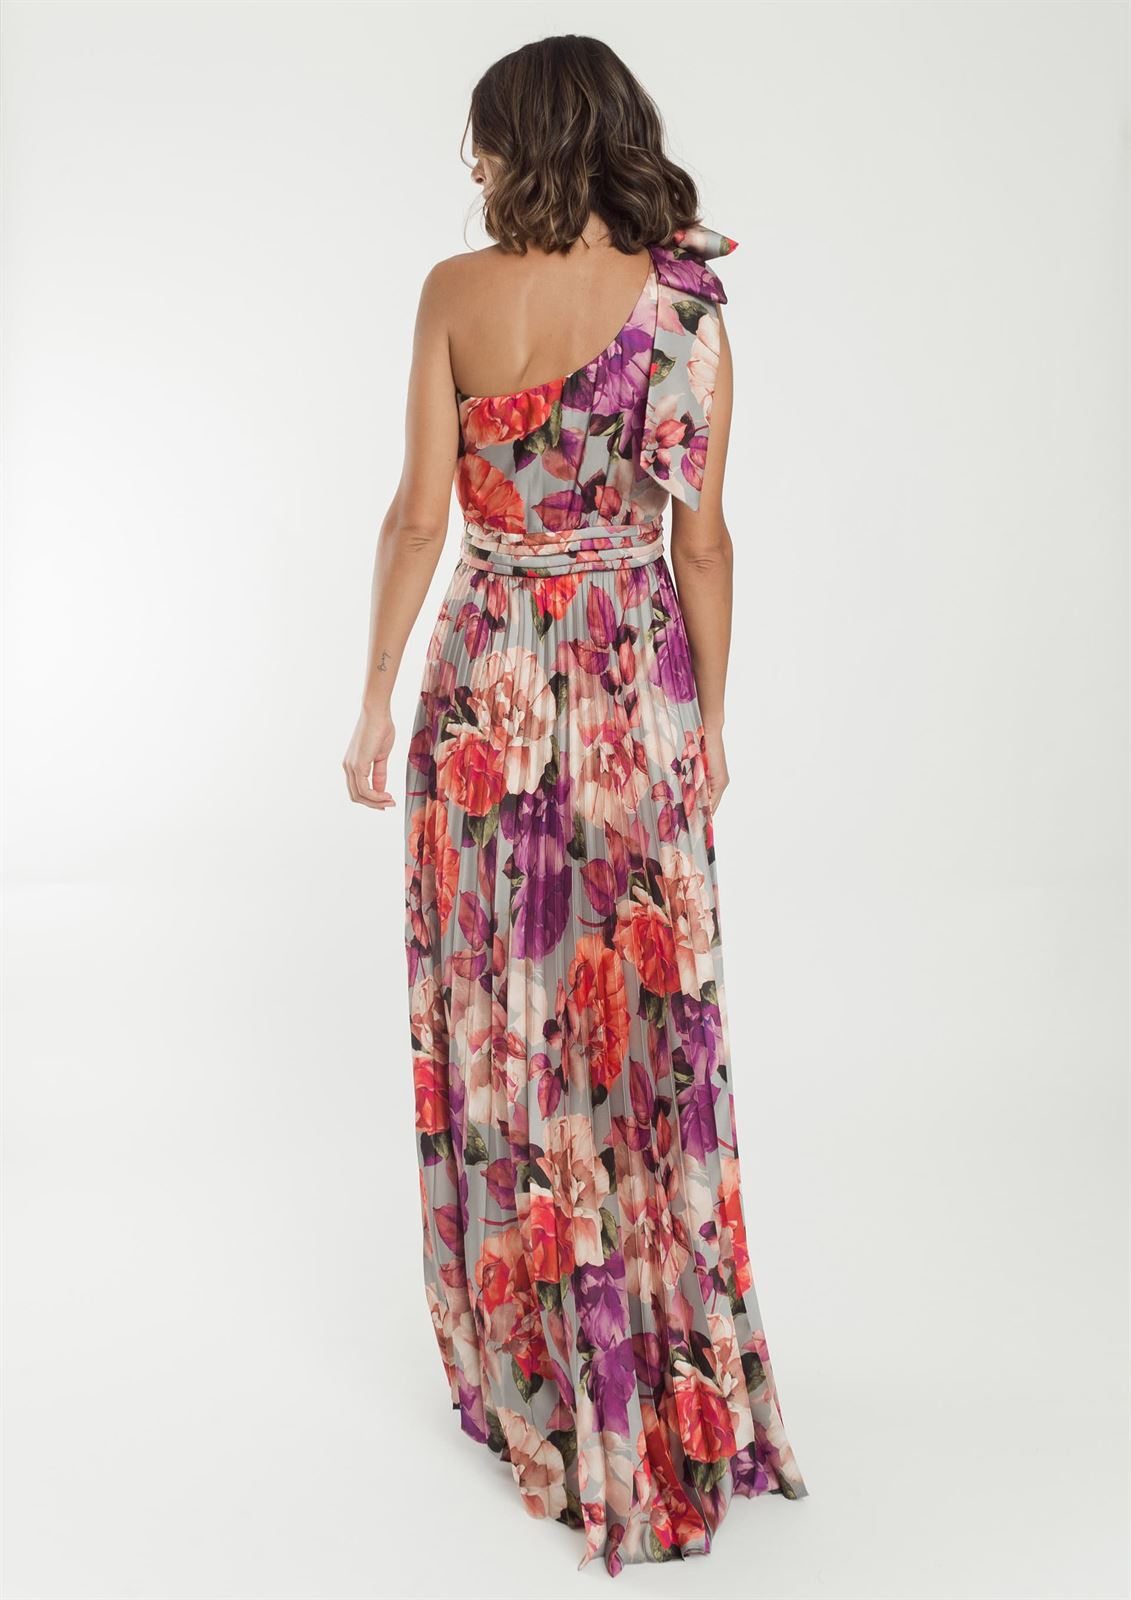 ALBA CONDE Vestido Plisado Estampado Floral - Imagen 3